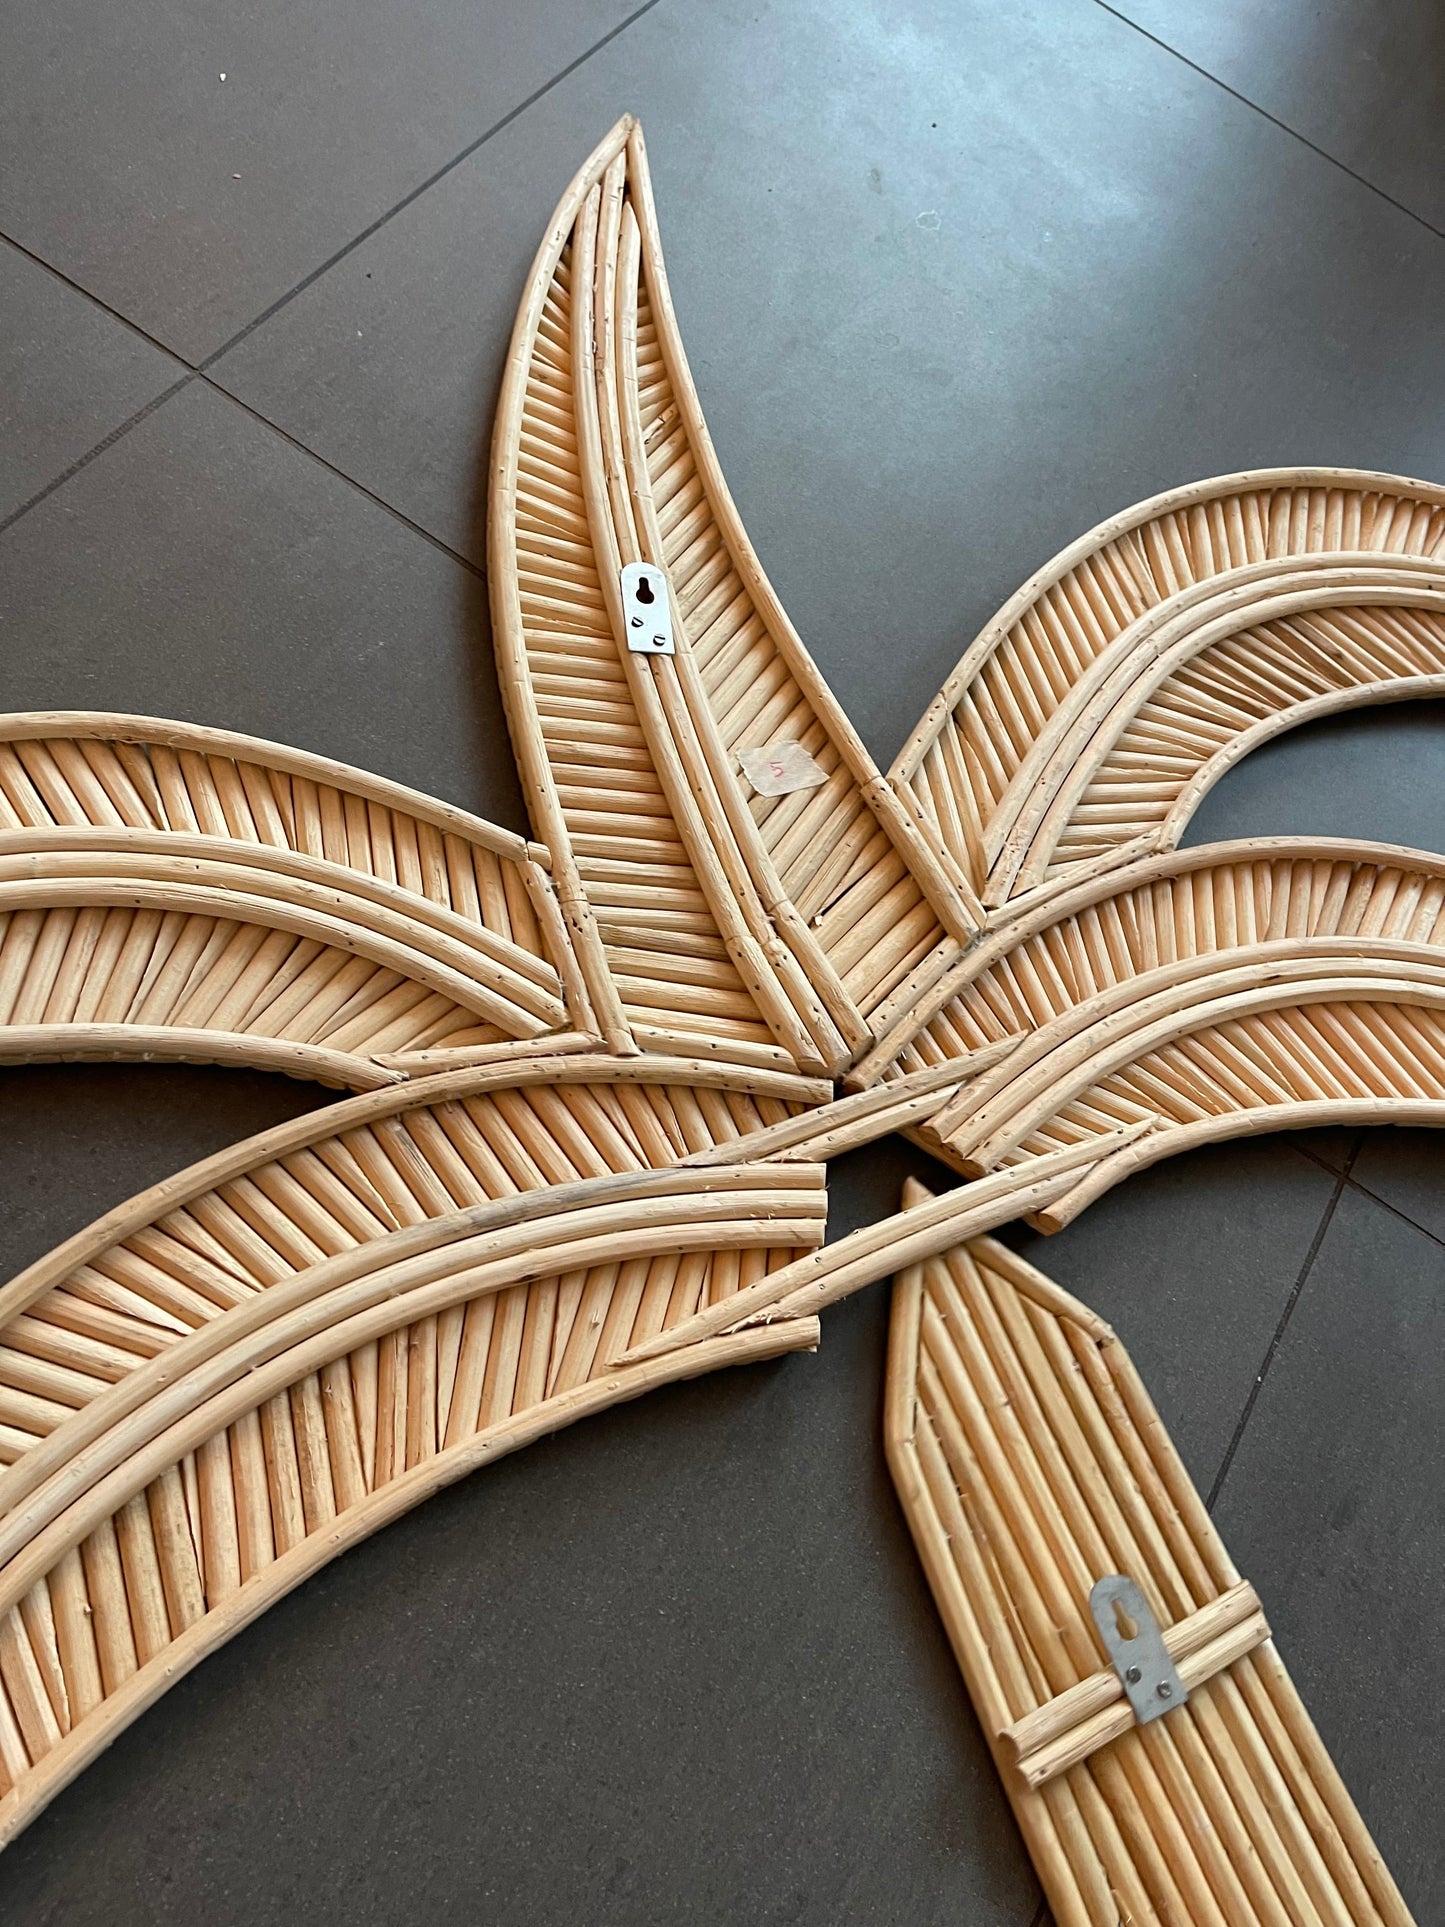 Op de afbeelding staat een schitterende wanddecoratie van een houten palmboom, met een realistisch ontwerp en natuurlijke kleur. Deze decoratie voegt een warm en organisch element toe aan elke muur.